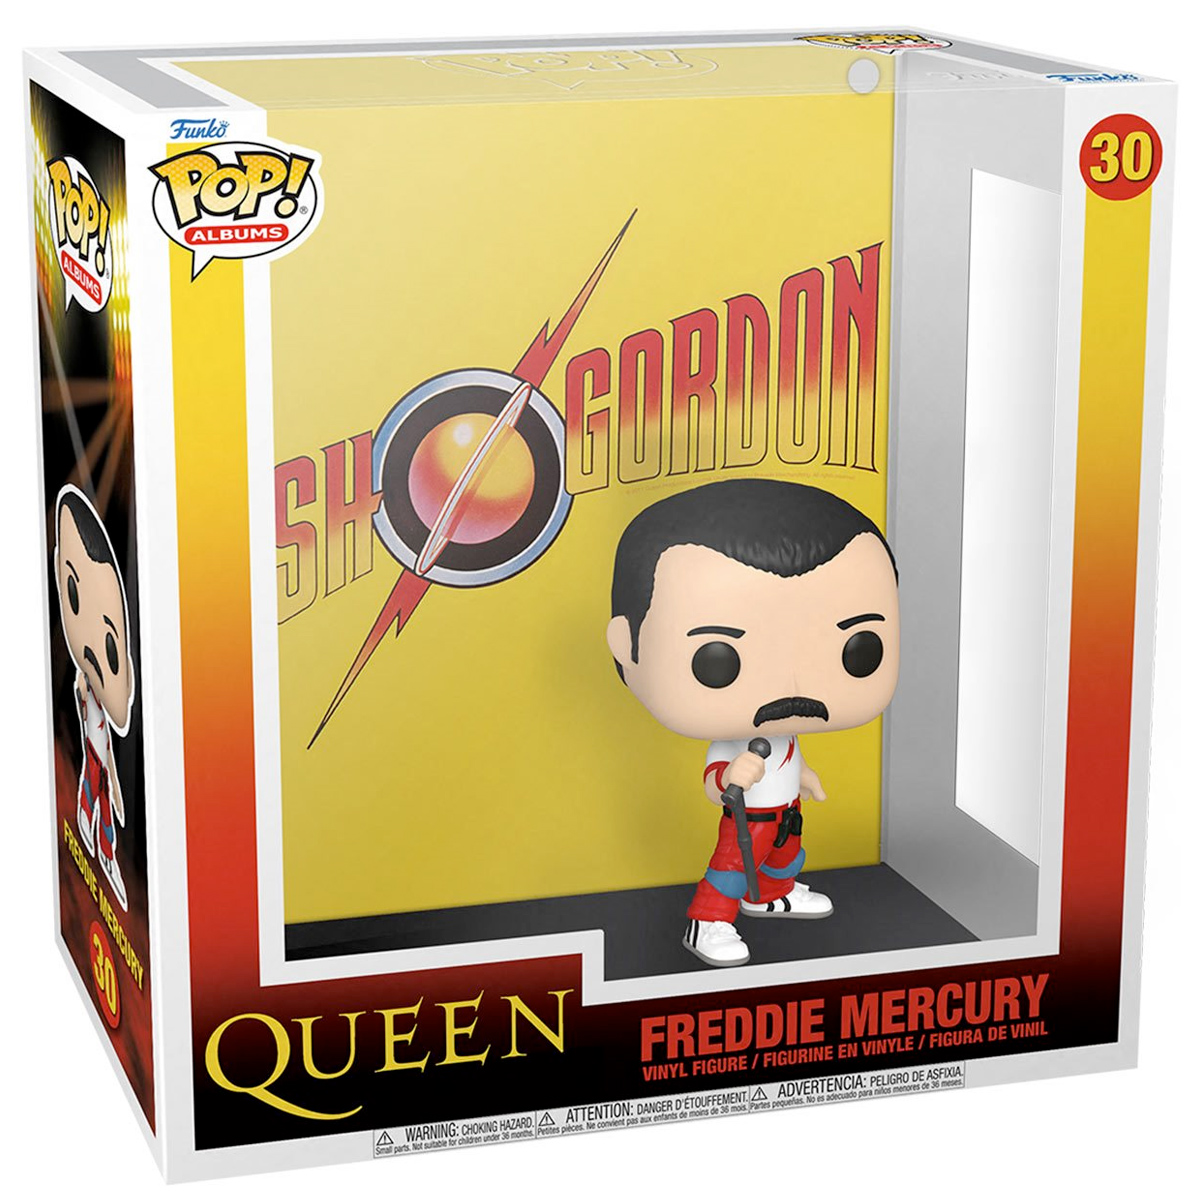 Boneco Pop! Albums Queen Flash Gordon de 1980 com Freddie Mercury